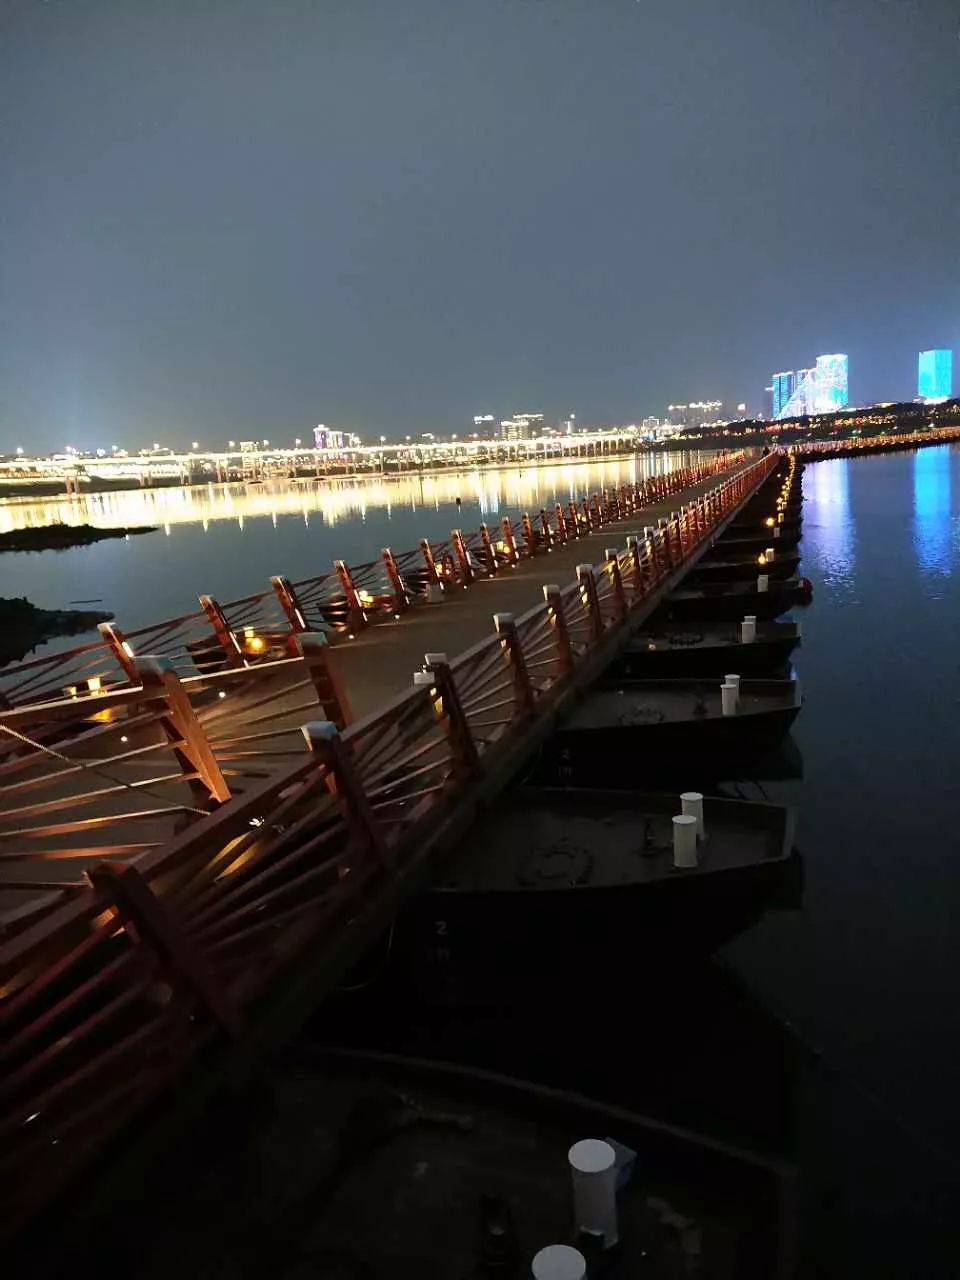 冷水滩浮桥夜景图片图片